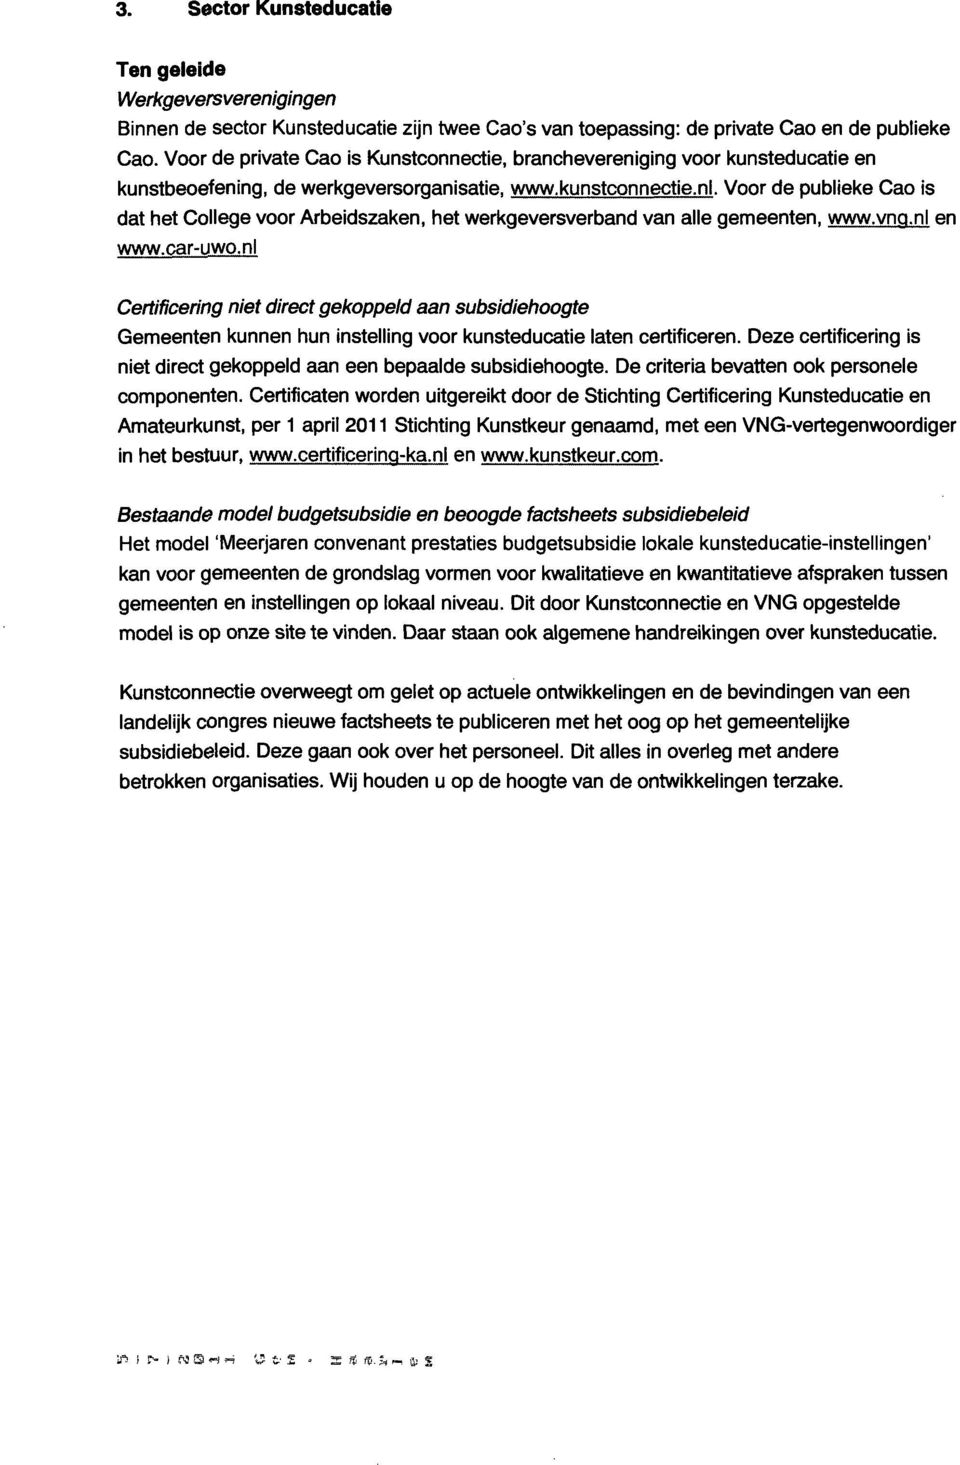 Voor de publieke Cao is dat het College voor Arbeidszaken, het werkgeversverband van alle gemeenten, www.vnq.nl en www.car-uwo.